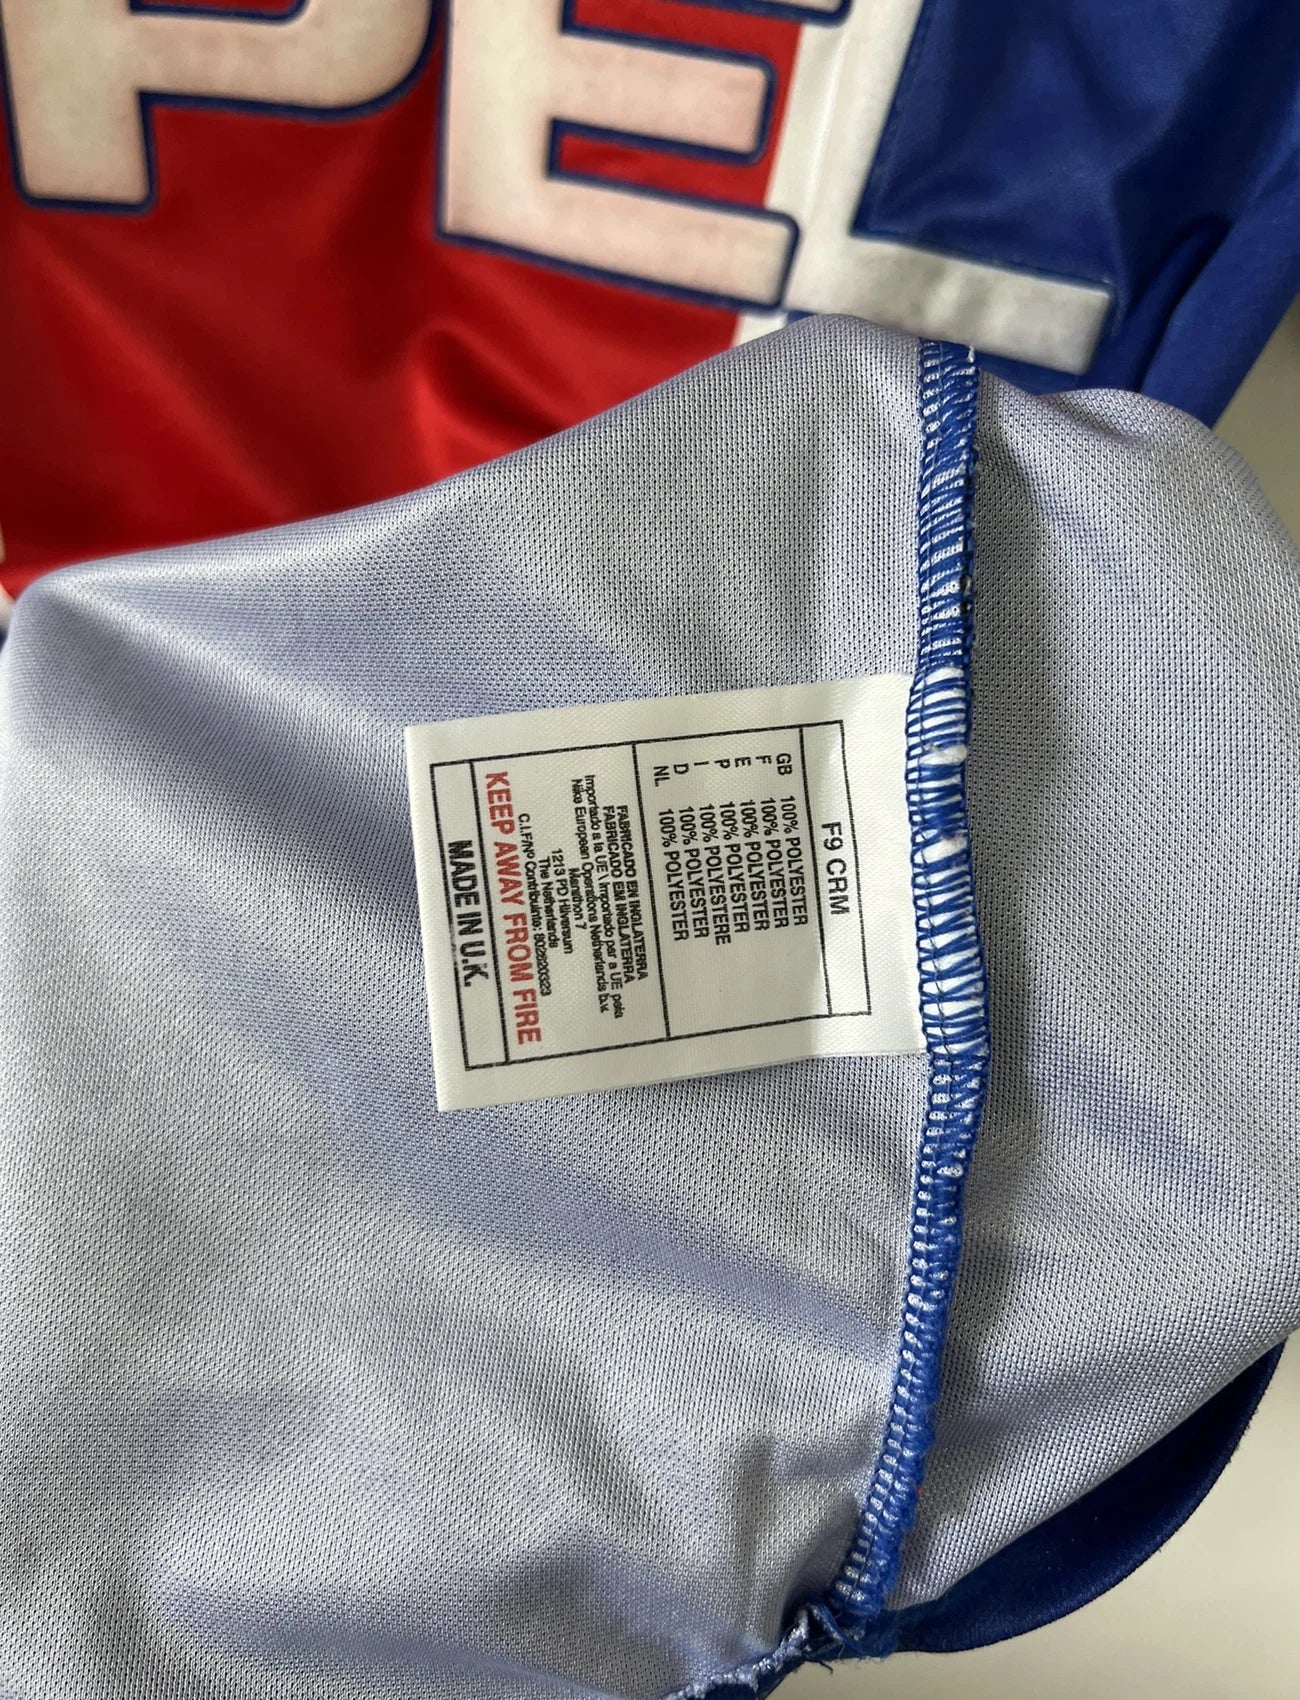 Maillot de foot vintage domicile du PSG de la saison 1999/2000. Le maillot est de couleur bleu et rouge. On peut retrouver l'équipementier nike et le sponsor Opel. Le maillot est floqué du numéro 11 Laurent Robert. Il s''agit d'un maillot authentique d'époque comportant l'étiquette avec les numéros F9 CRM